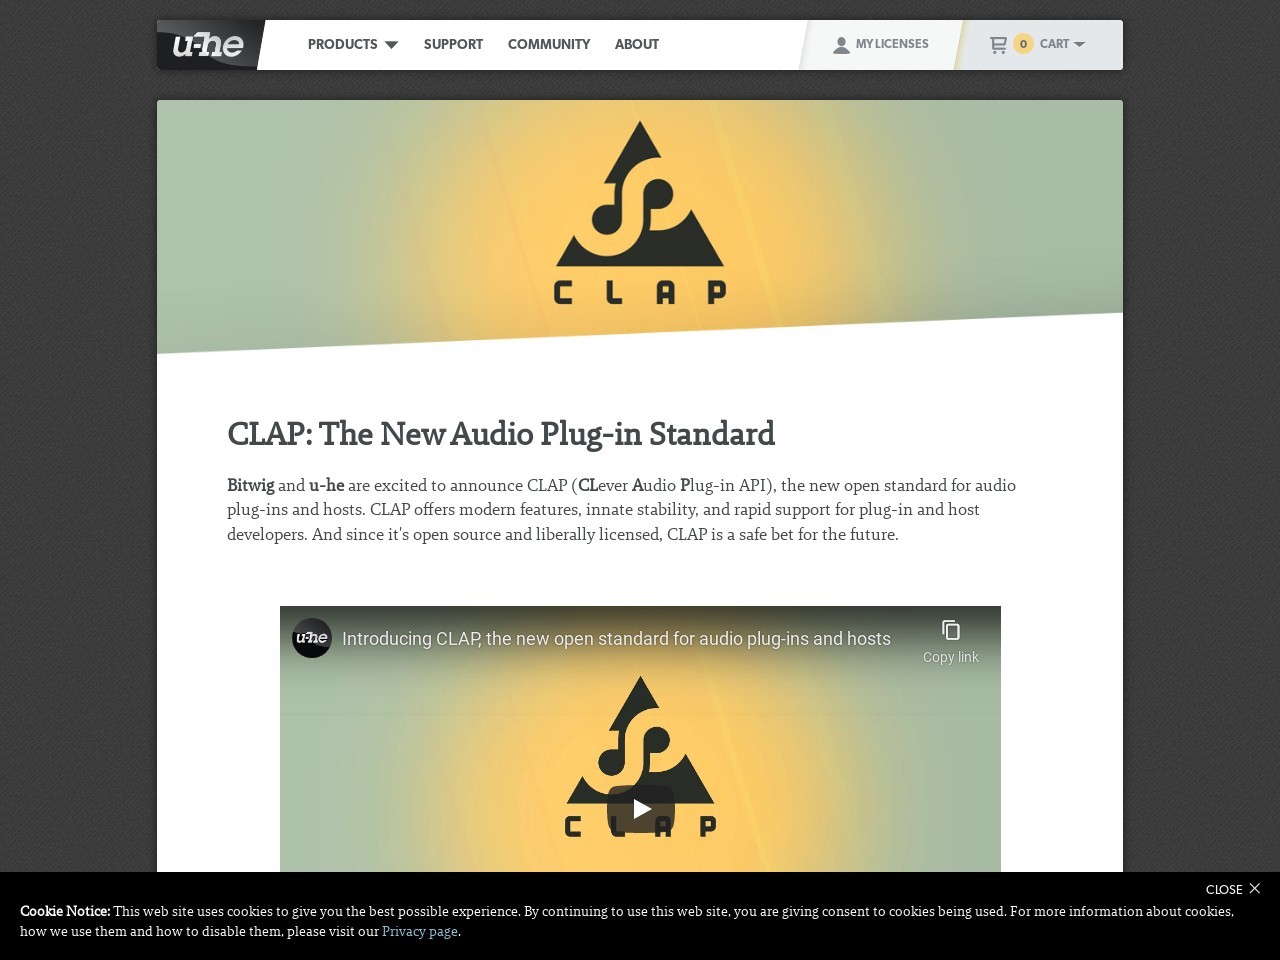 u-he - CLAP | Clever Audio Plug-in API